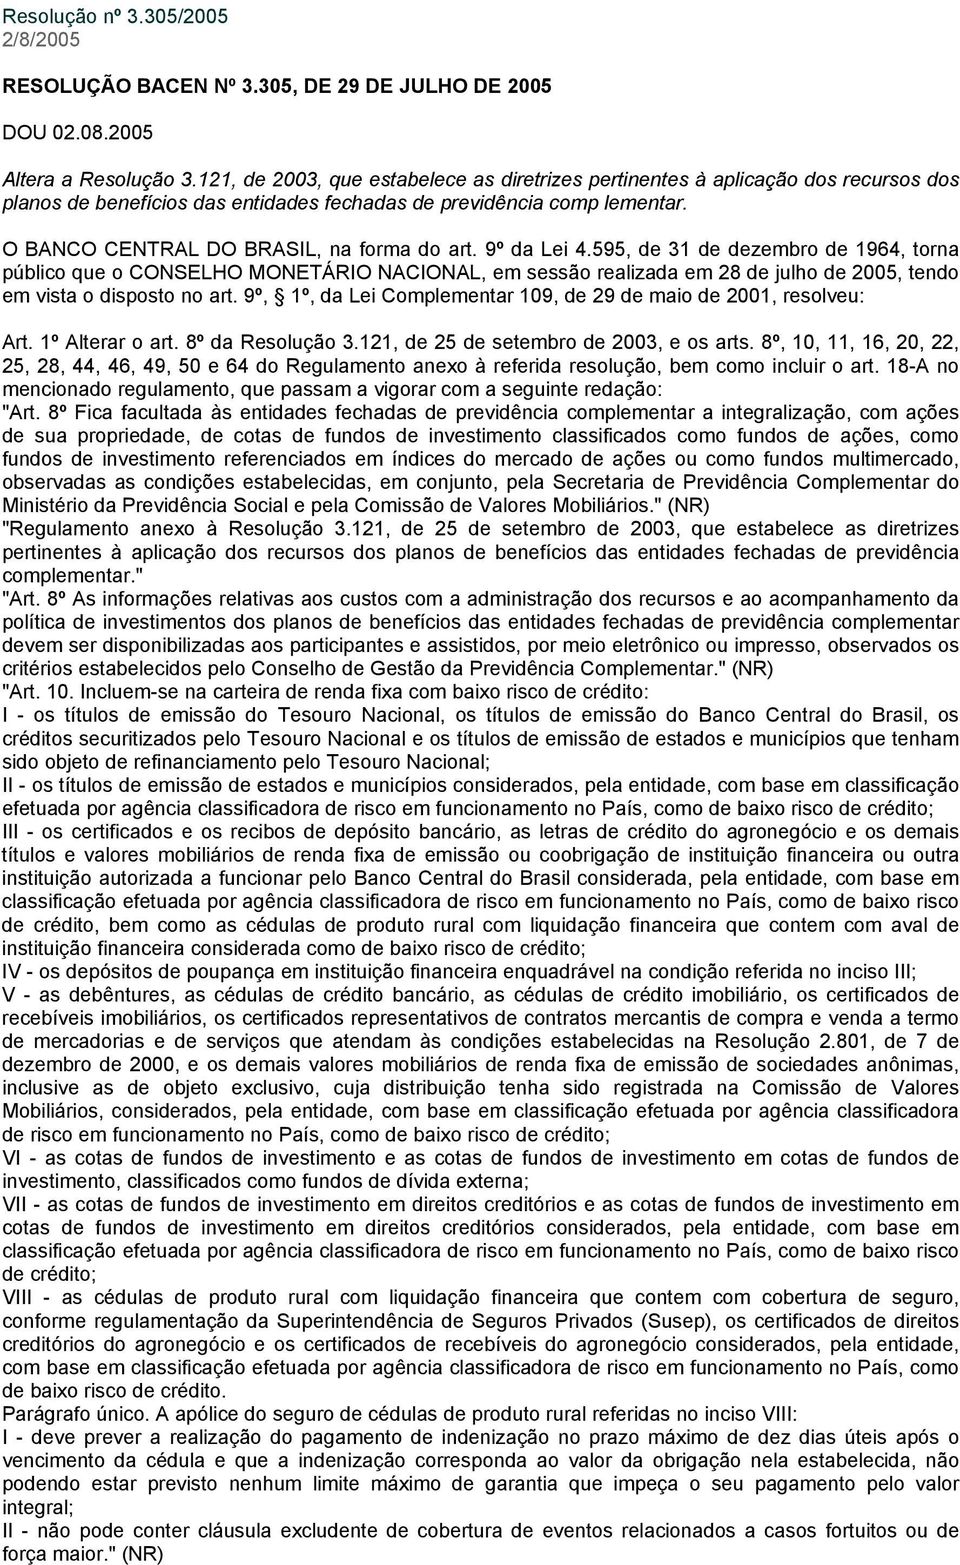 O BANCO CENTRAL DO BRASIL, na forma do art. 9º da Lei 4.